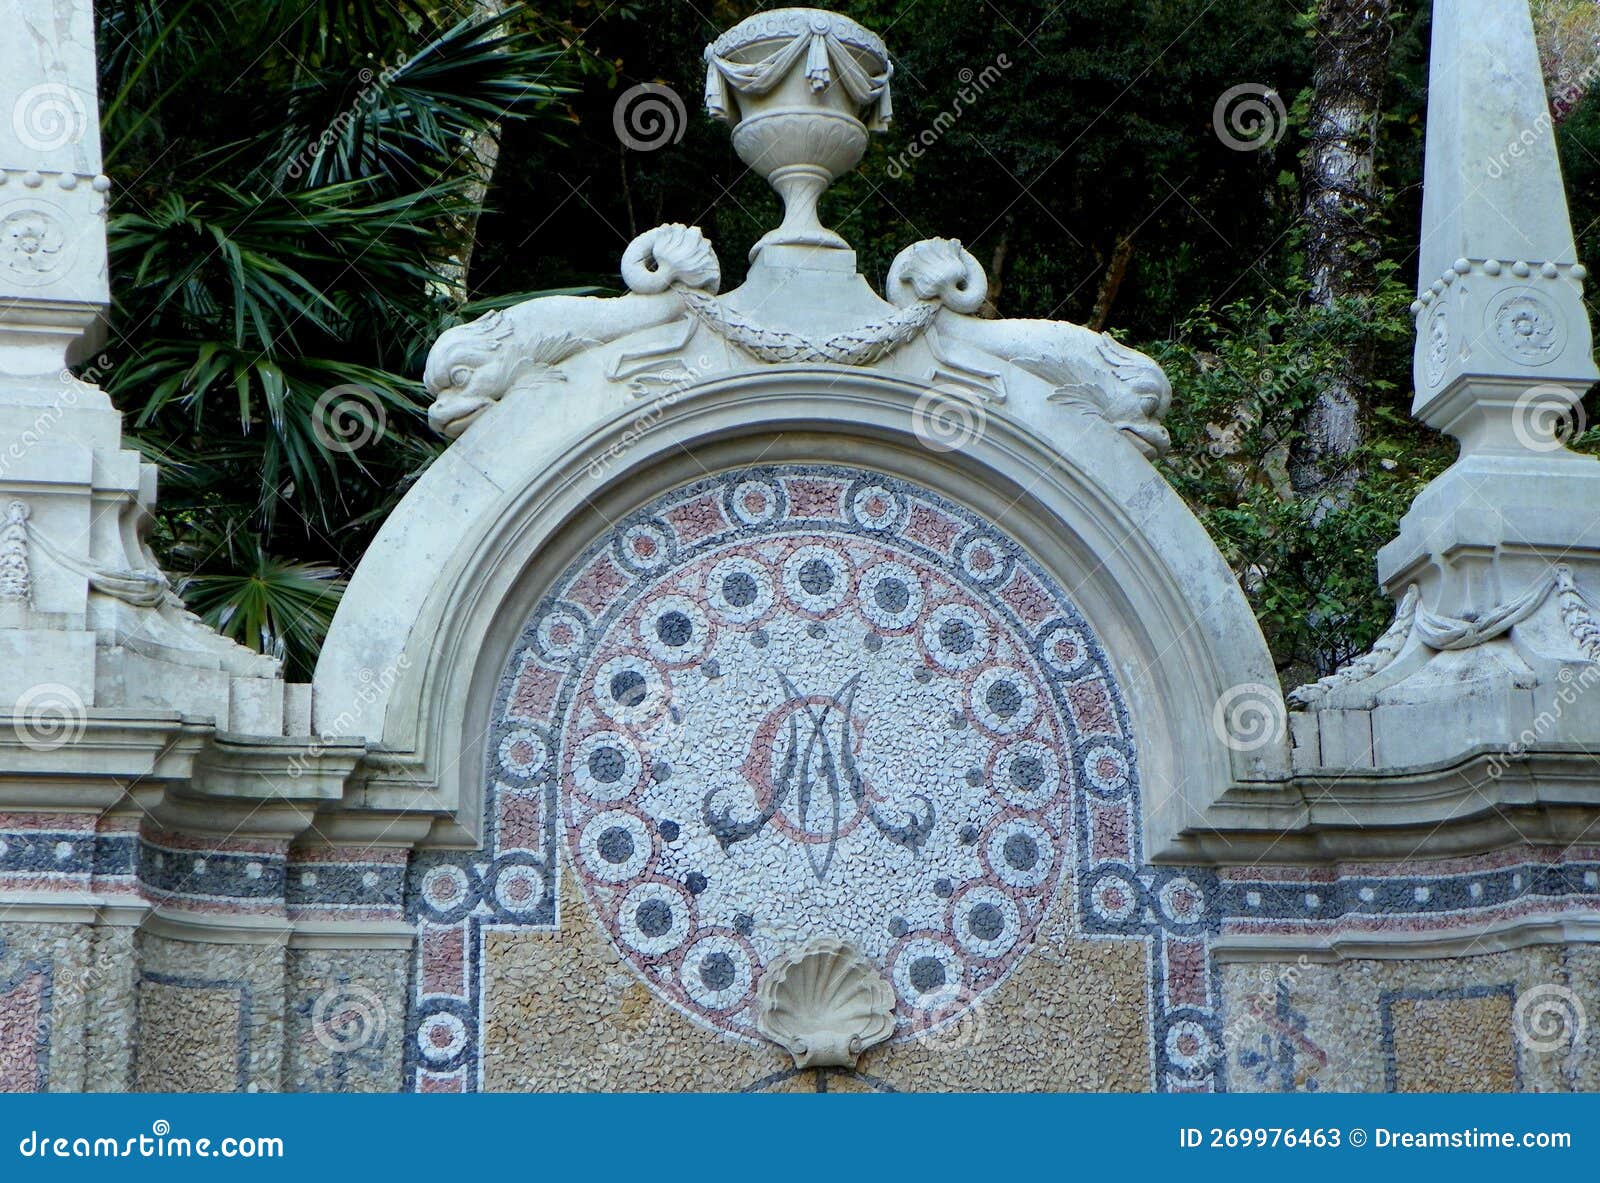 portugal, sintra, quinta da regaleira, fountain of abundance (fonte da abundancia), part of the facade